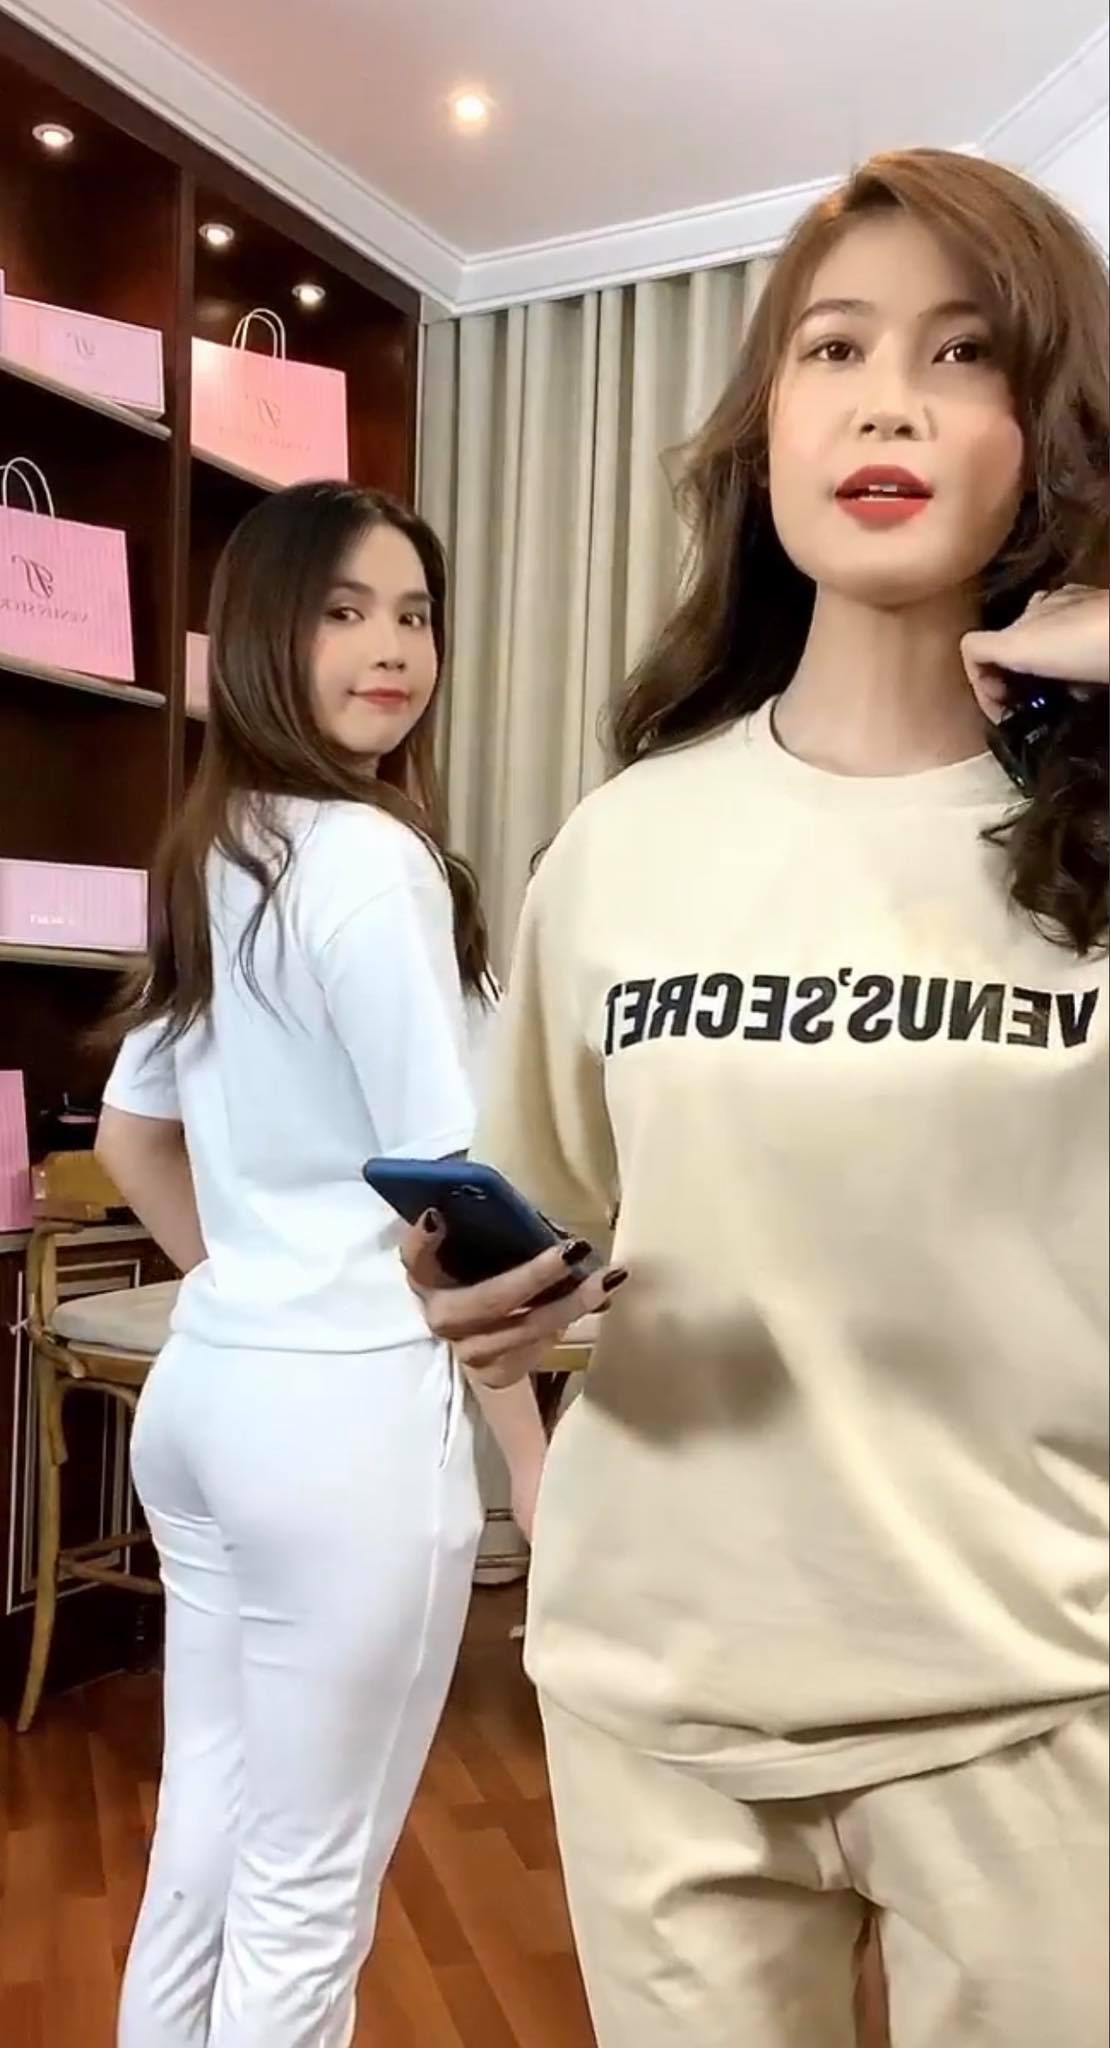 Sau thời gian nghỉ dịch, Ngọc Trinh livestream bán quần áo online - ảnh 4